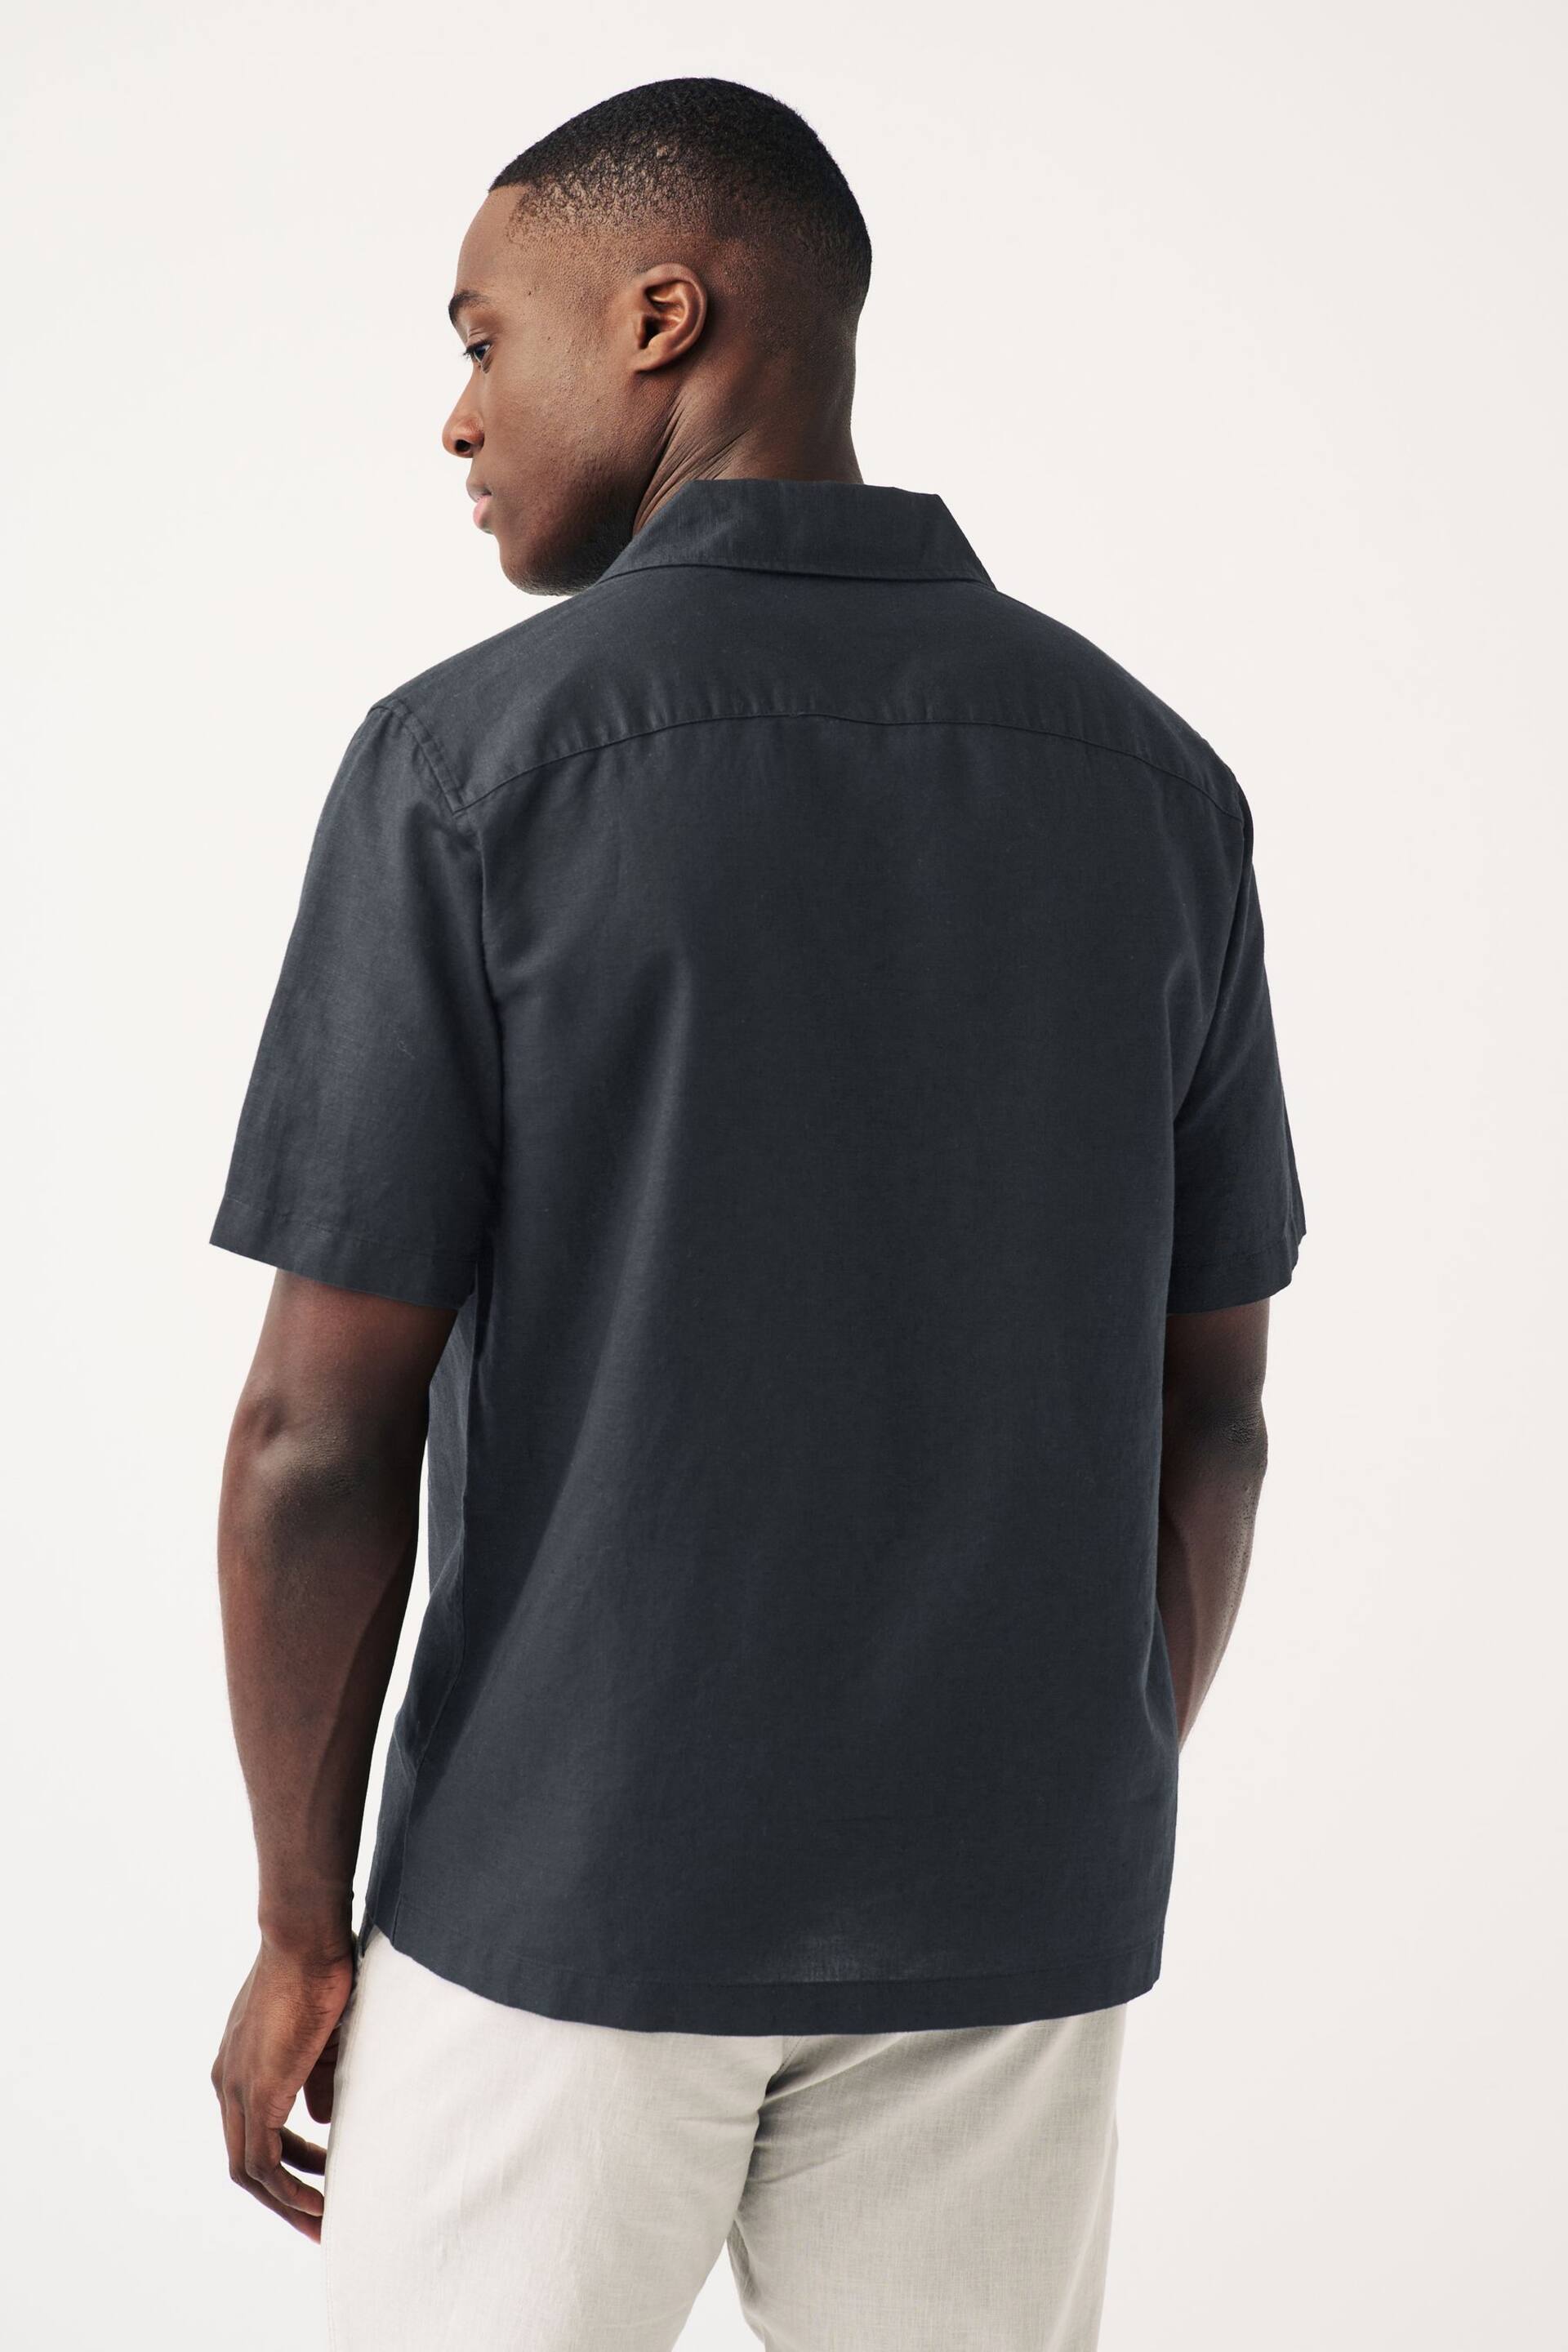 Black Cuban Collar Linen Blend Short Sleeve Shirt - Image 2 of 6